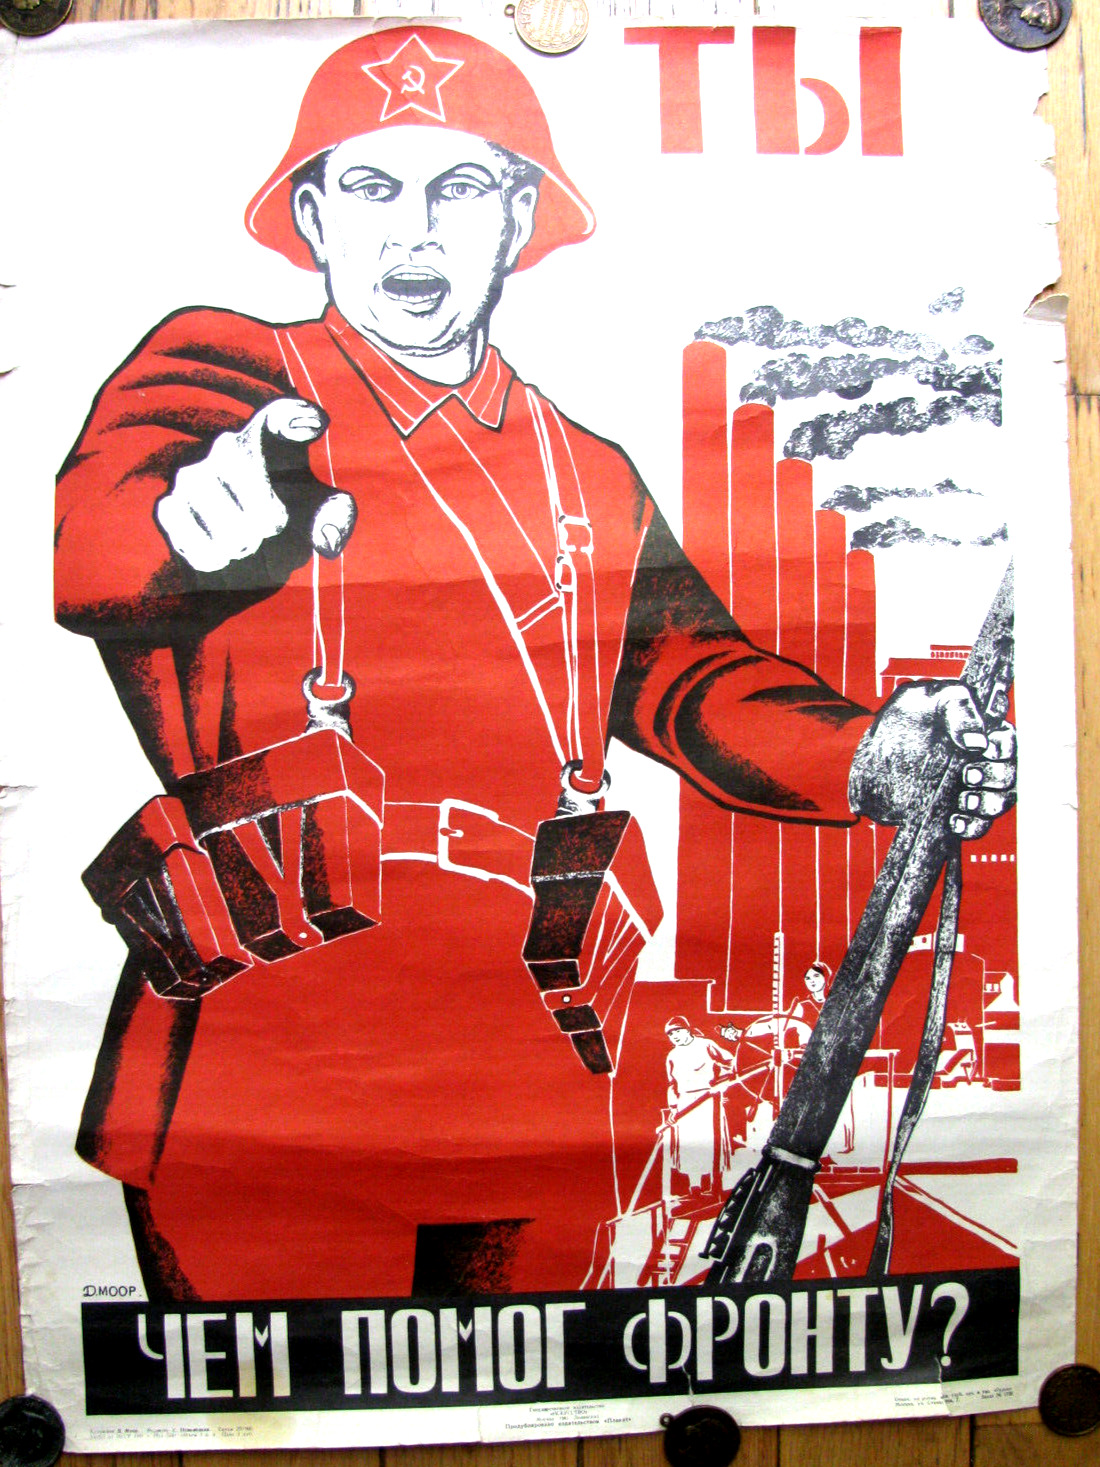 Vintage Soviet Russian Poster, 1941 - Very RARE  100% ORIGINAL  - D.Moor -